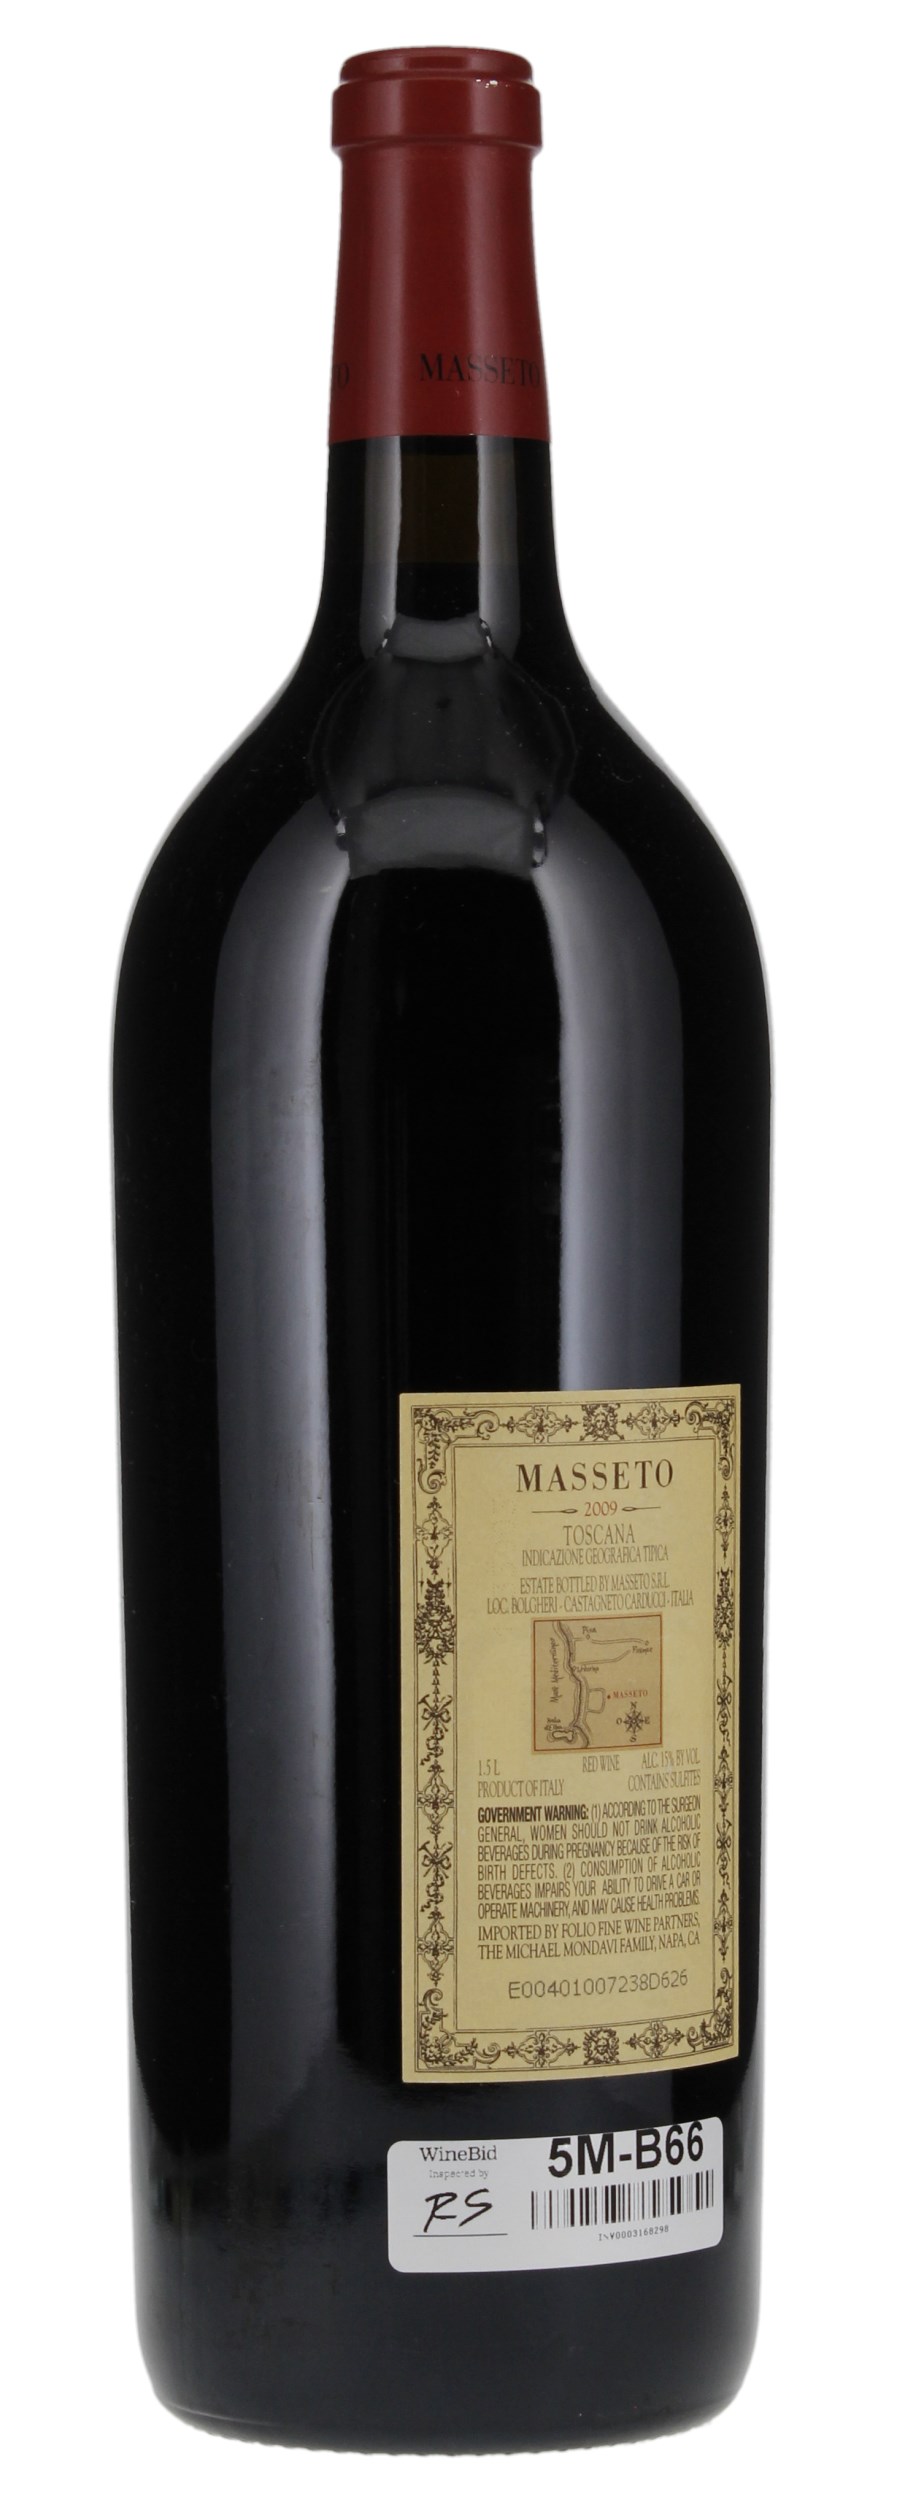 2009 Tenuta Dell'Ornellaia Masseto, 1.5ltr